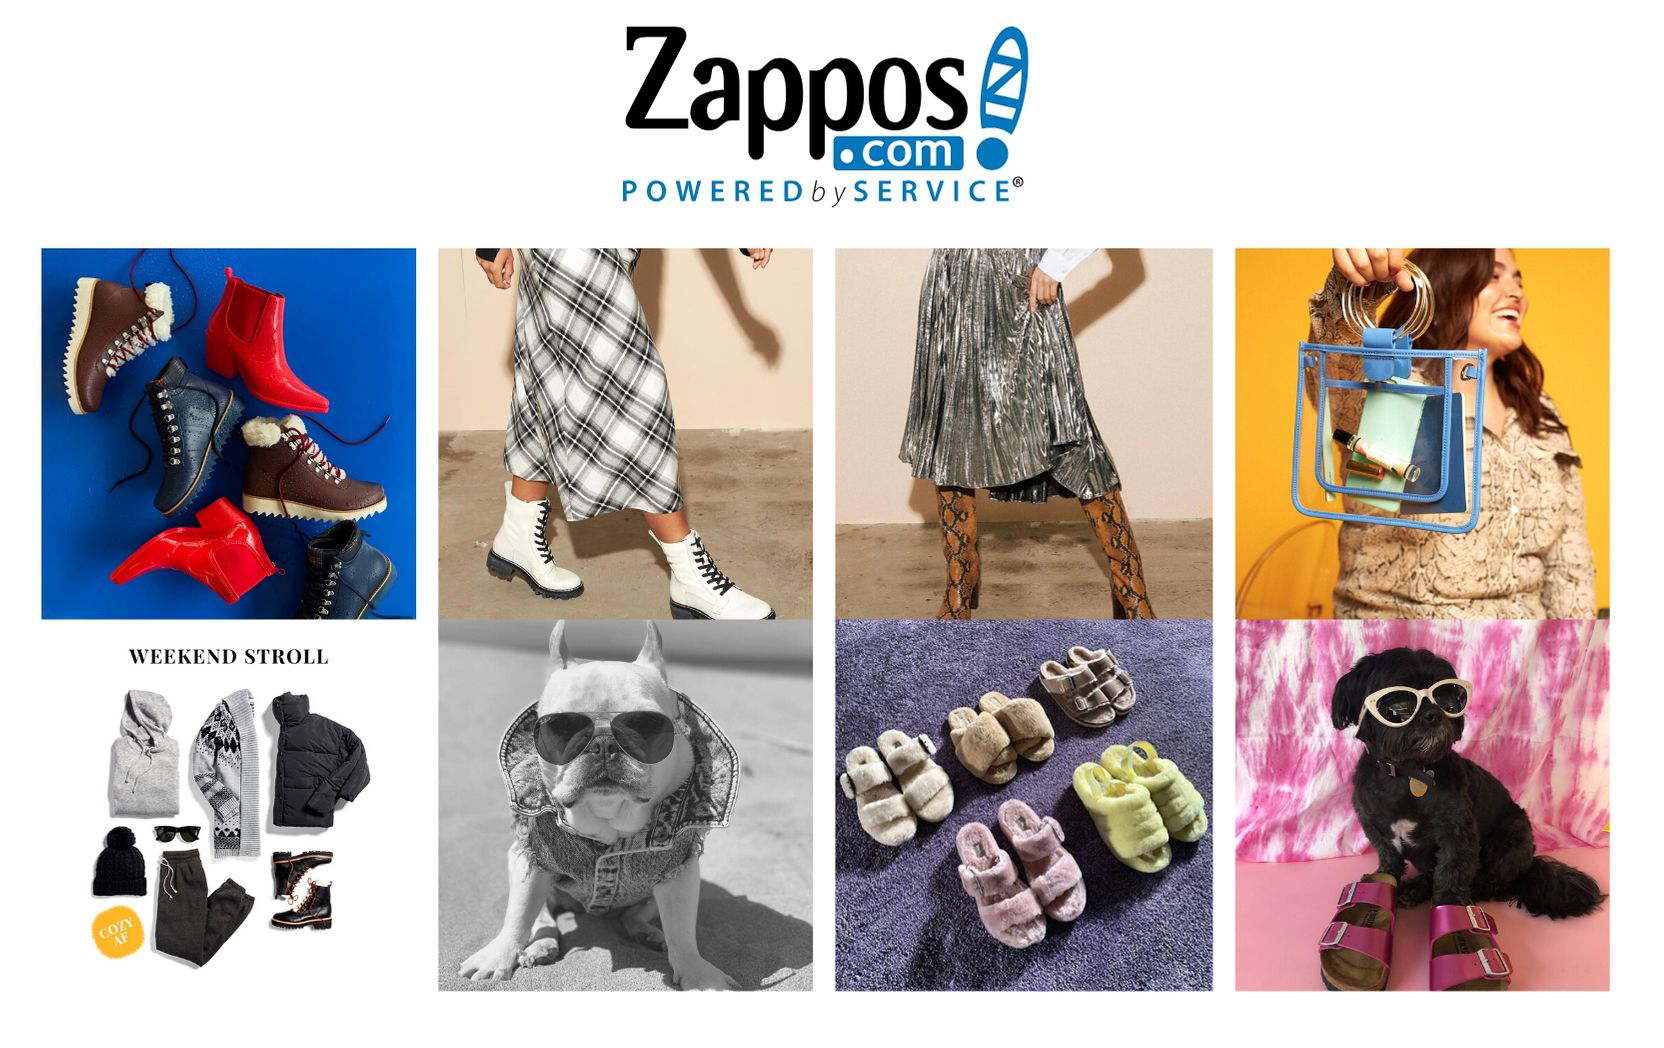 Zappos Social Media Campaigns